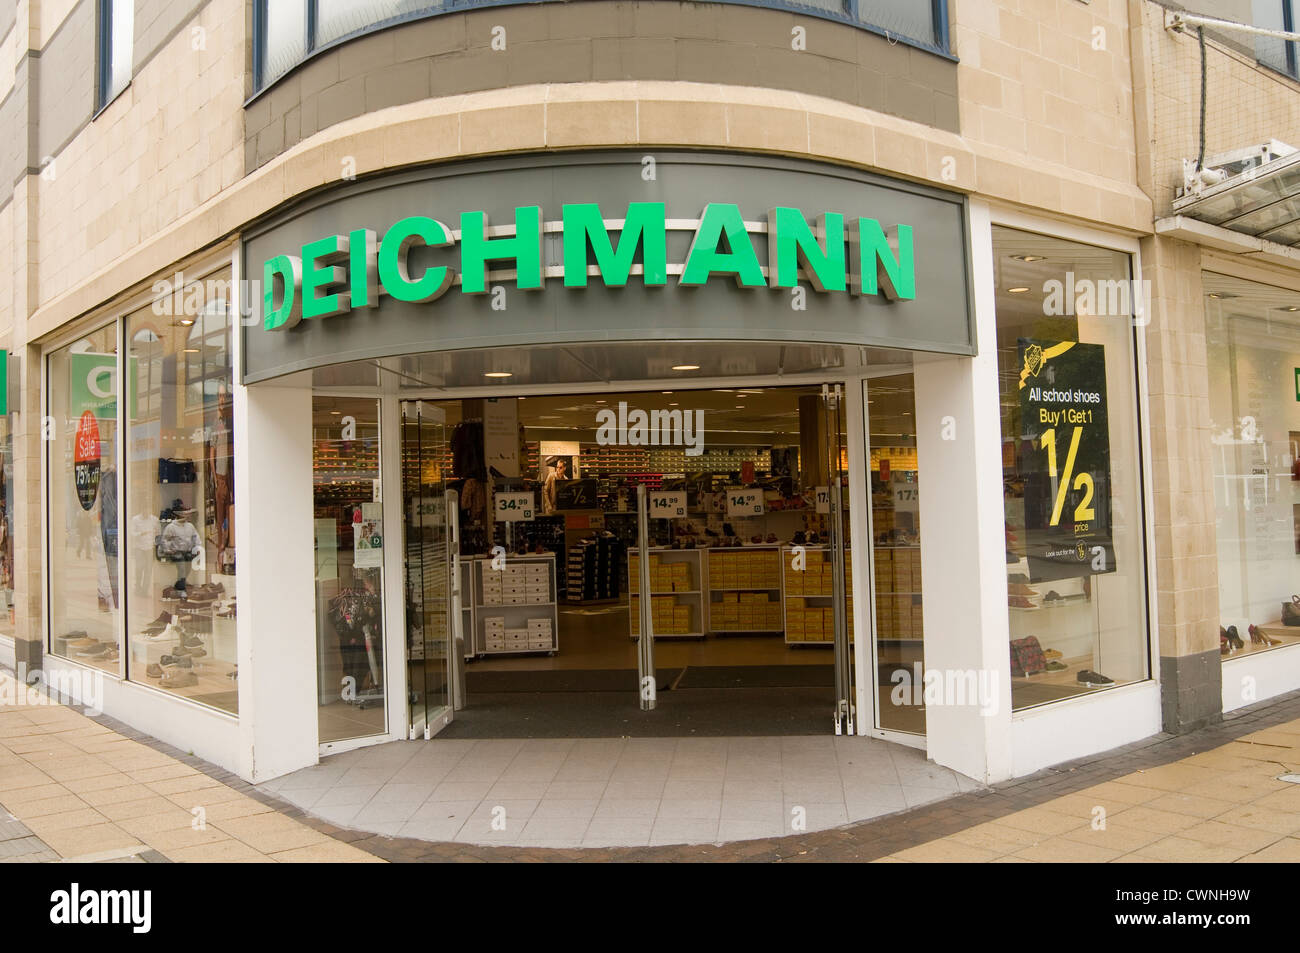 deichmann shoe shop shoeshop shops shoeshops german chain retailer retail Stock Photo